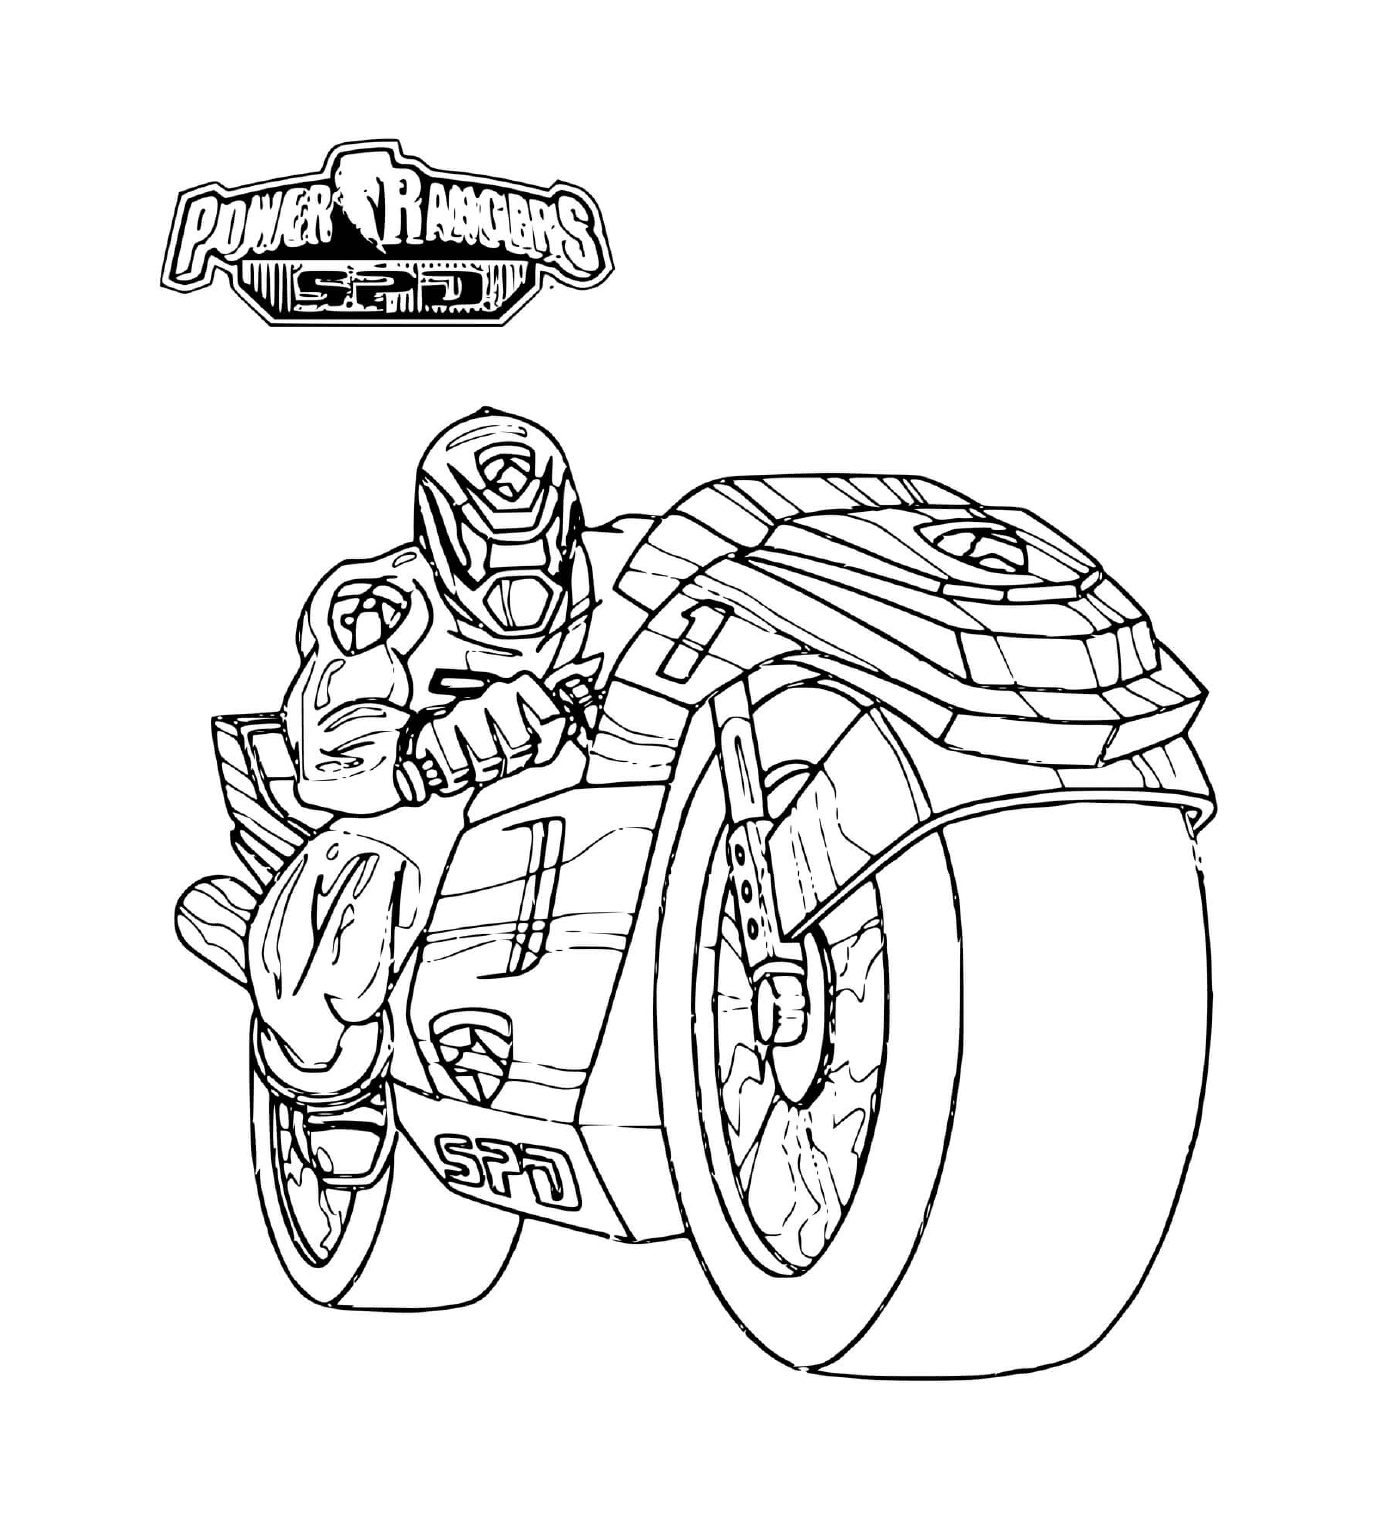  Power Ranger montando uma motocicleta 